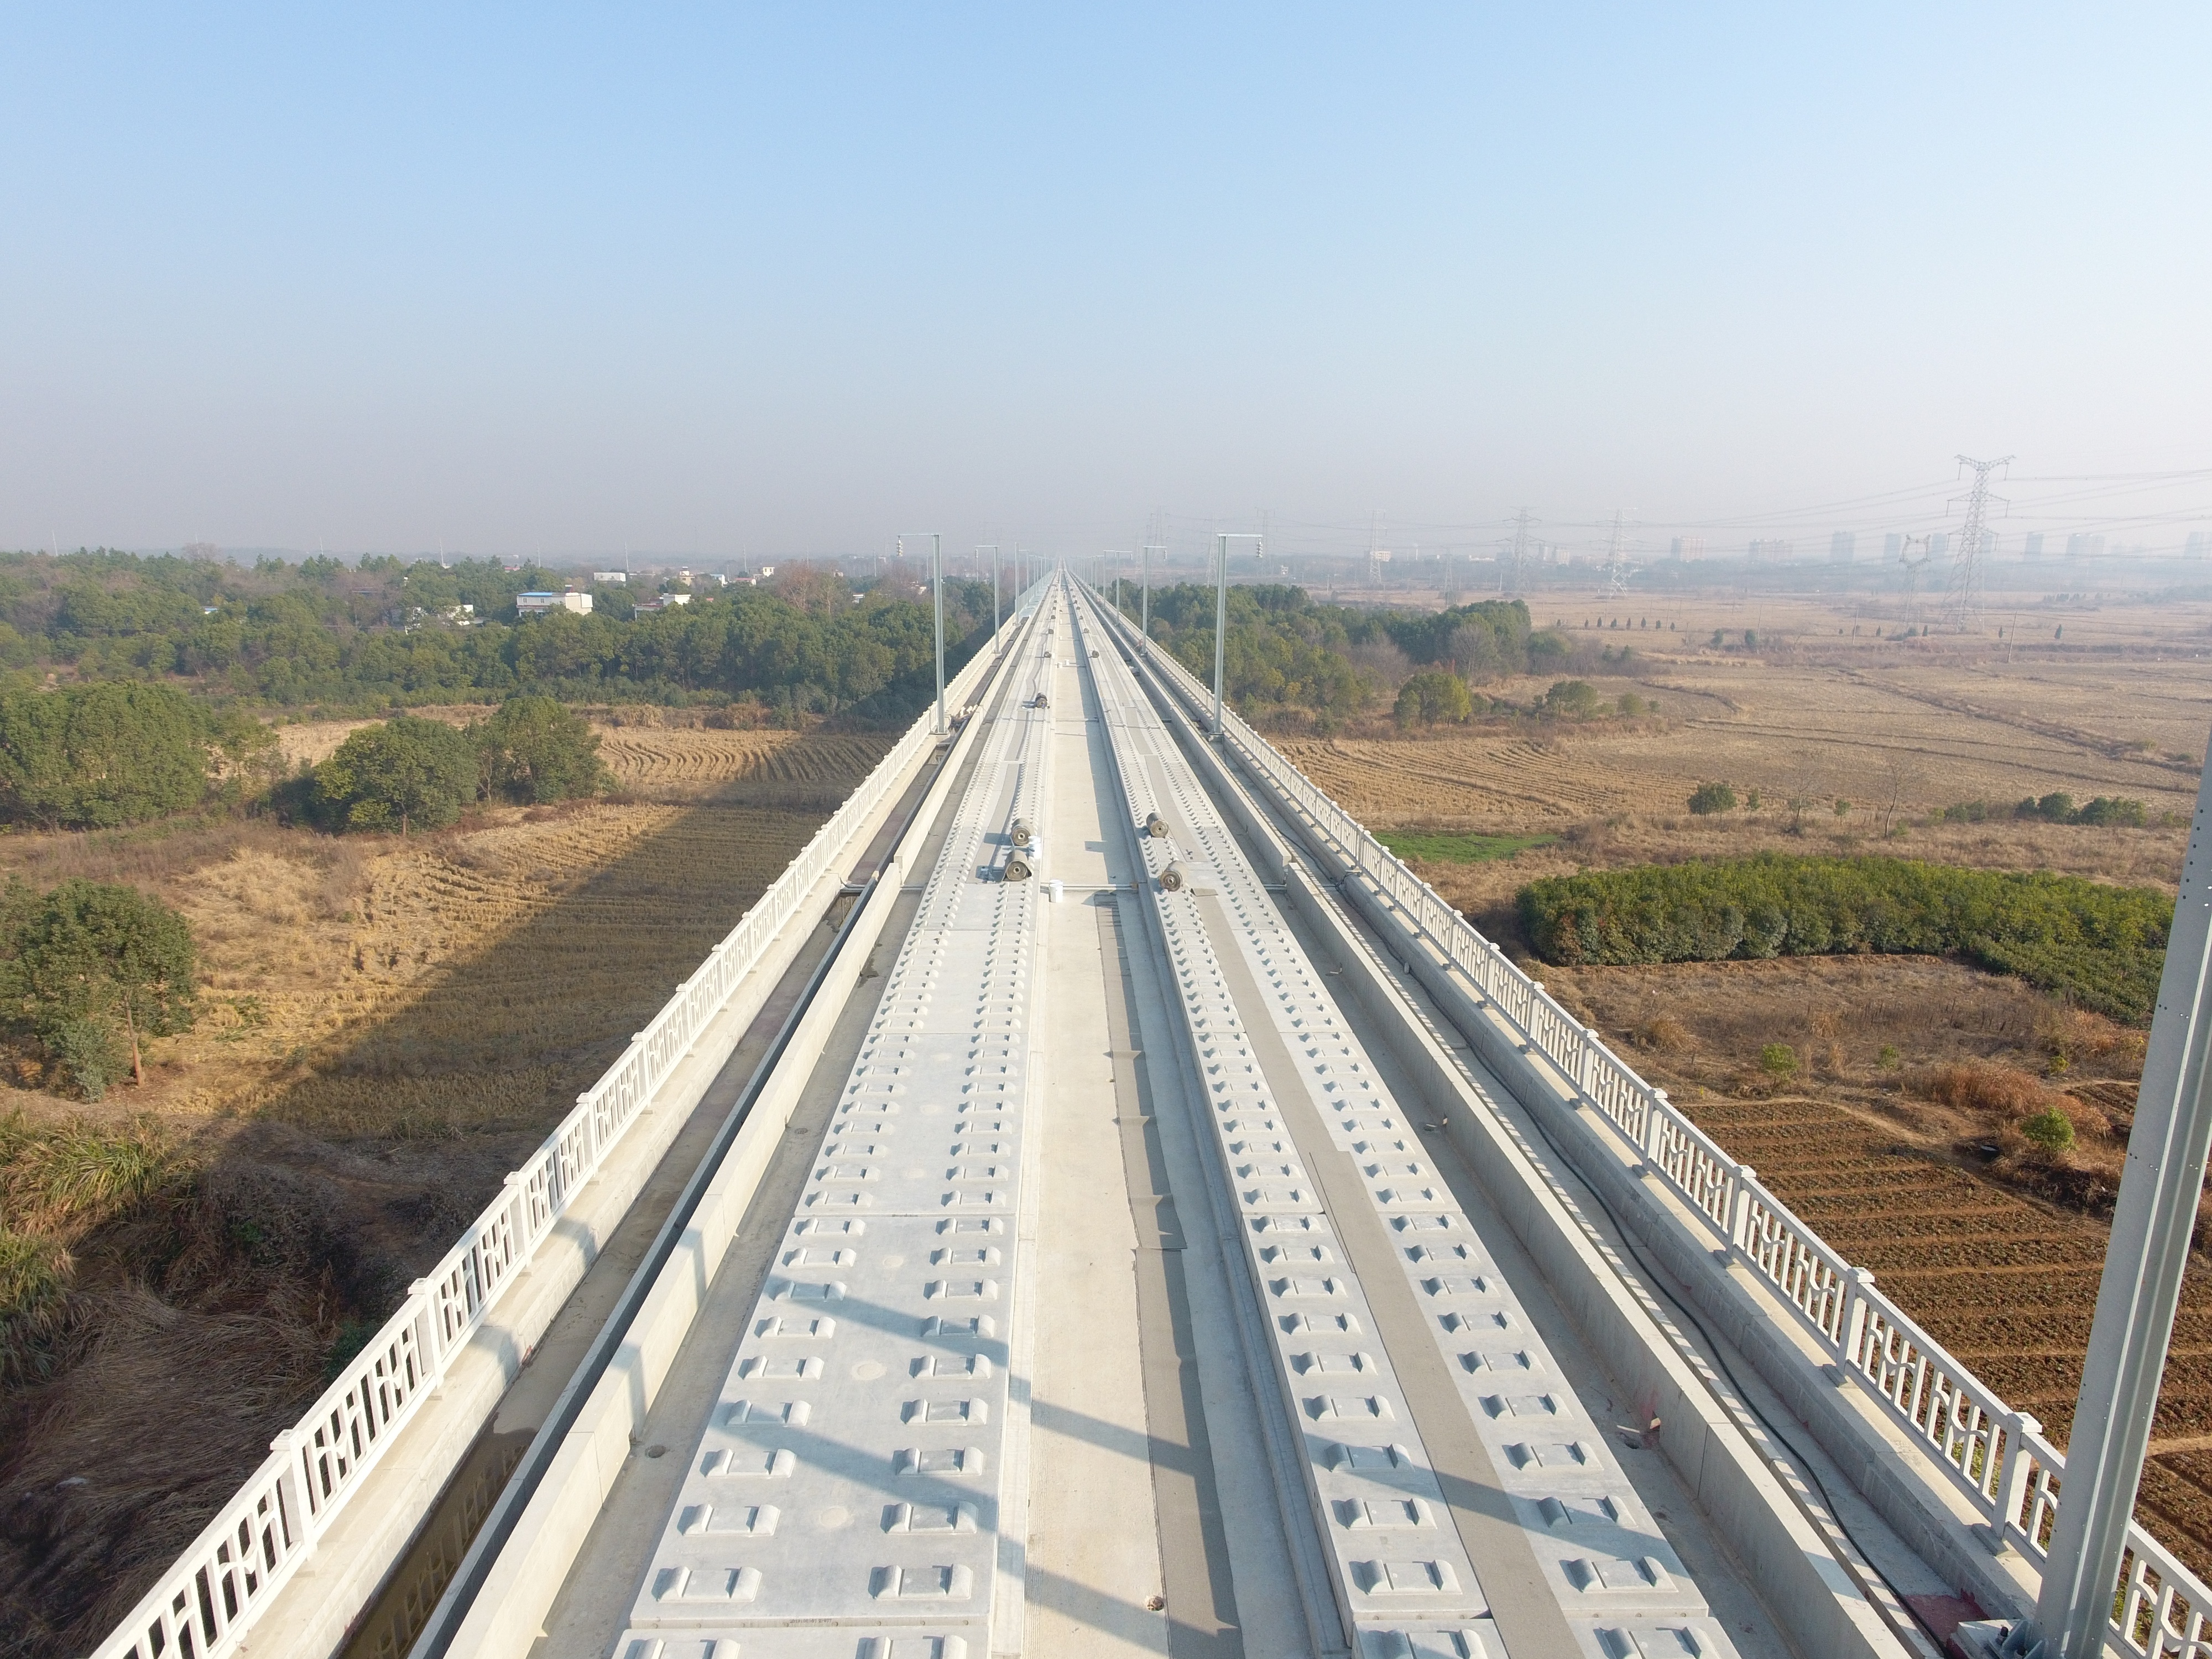 安高铁是合肥至南昌间快速客运主通道,在十三五期间是京九高速铁路